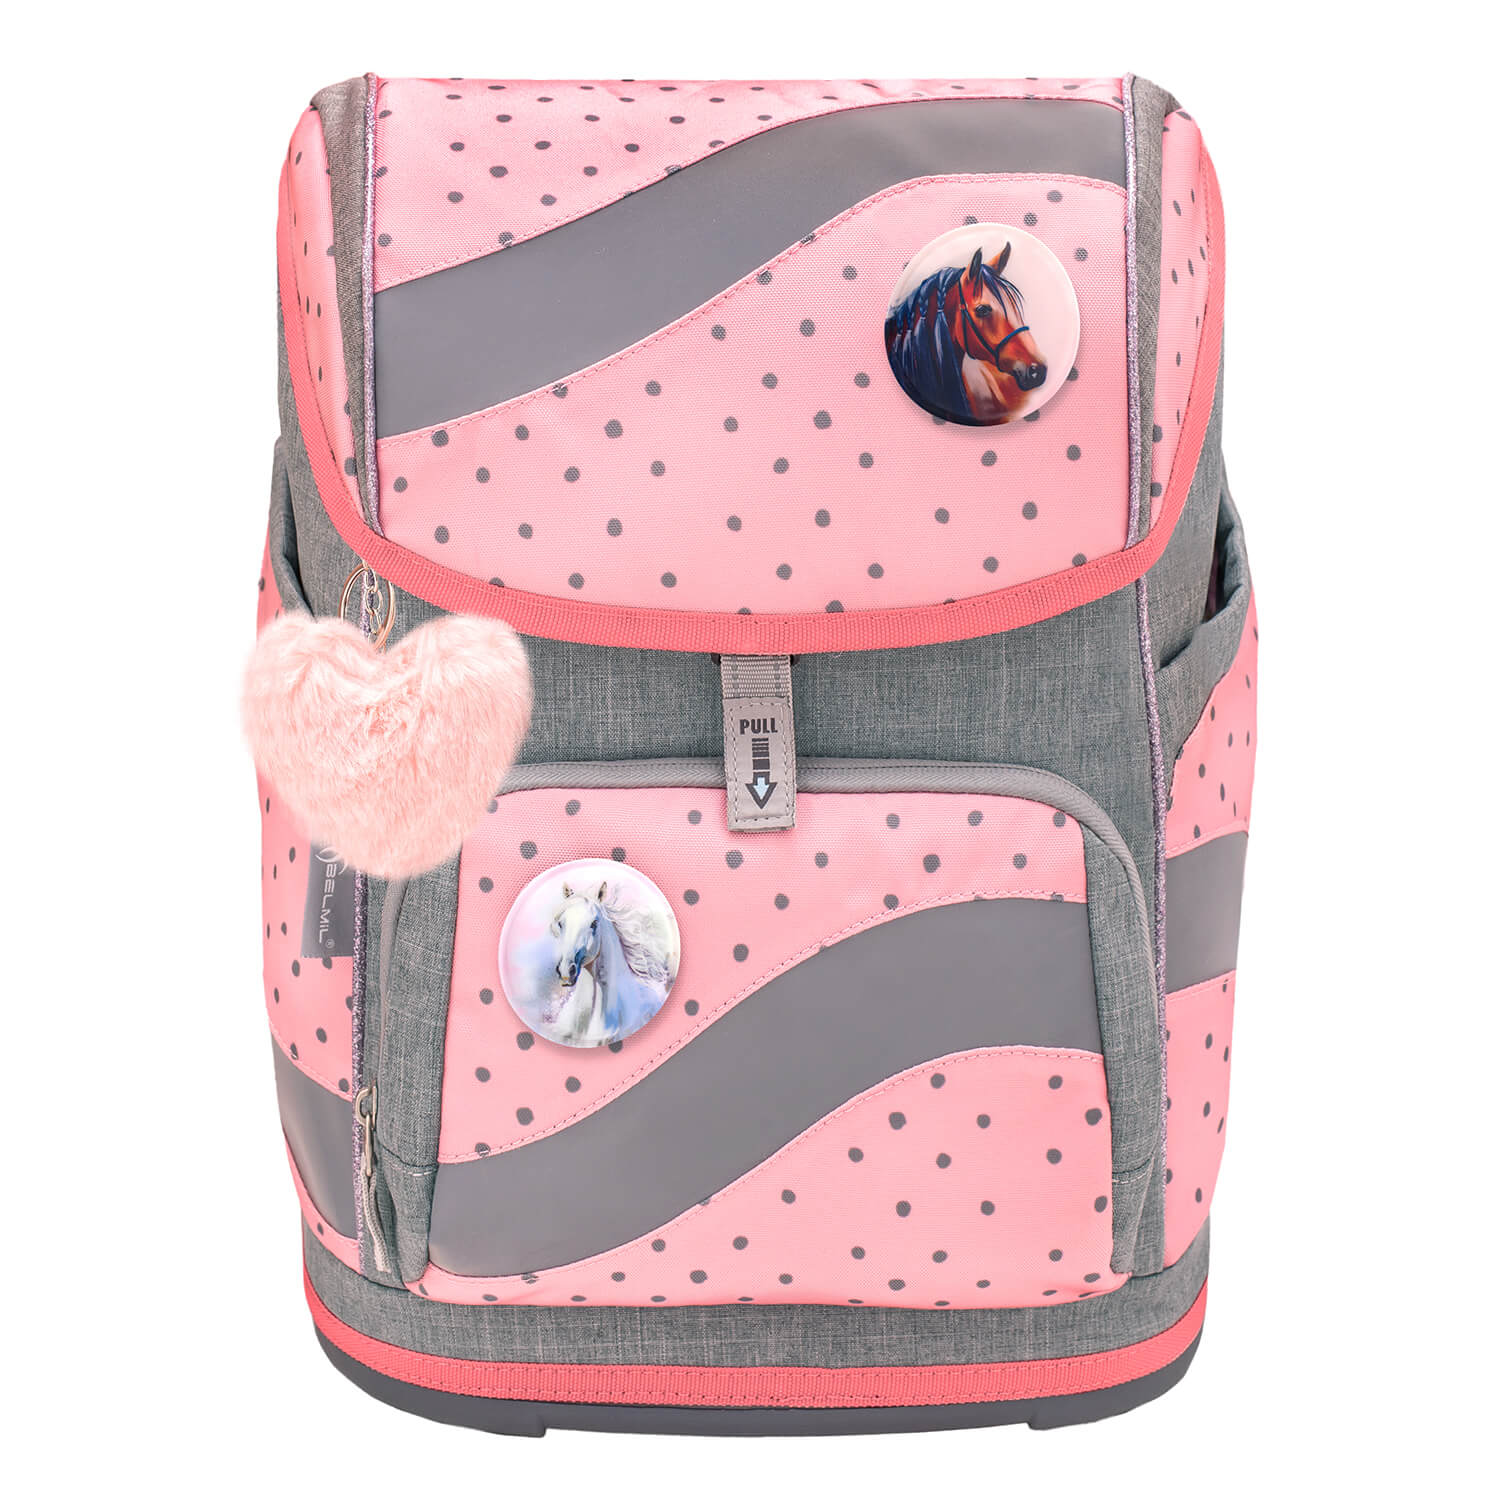 Smarty Pink Dots 2 schoolbag set 5 pcs